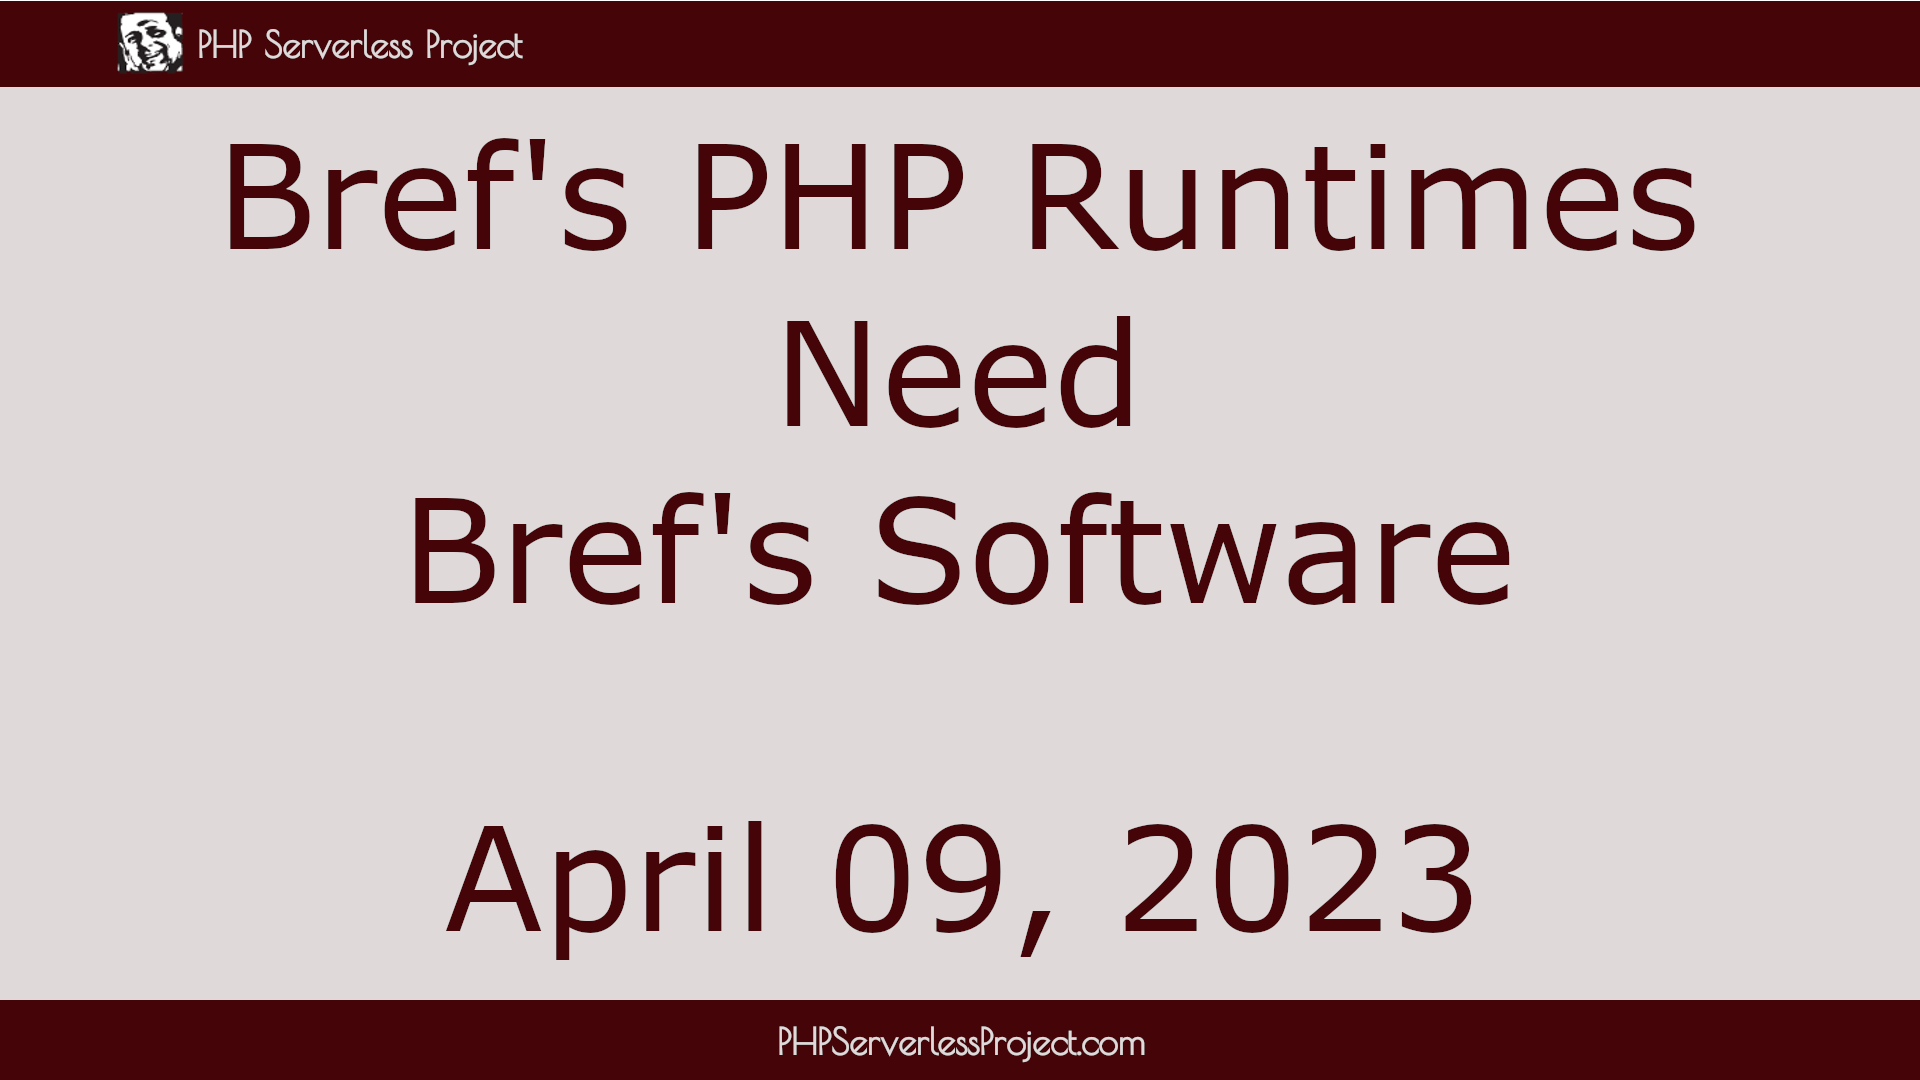 Bref Runtimes Need Bref Software